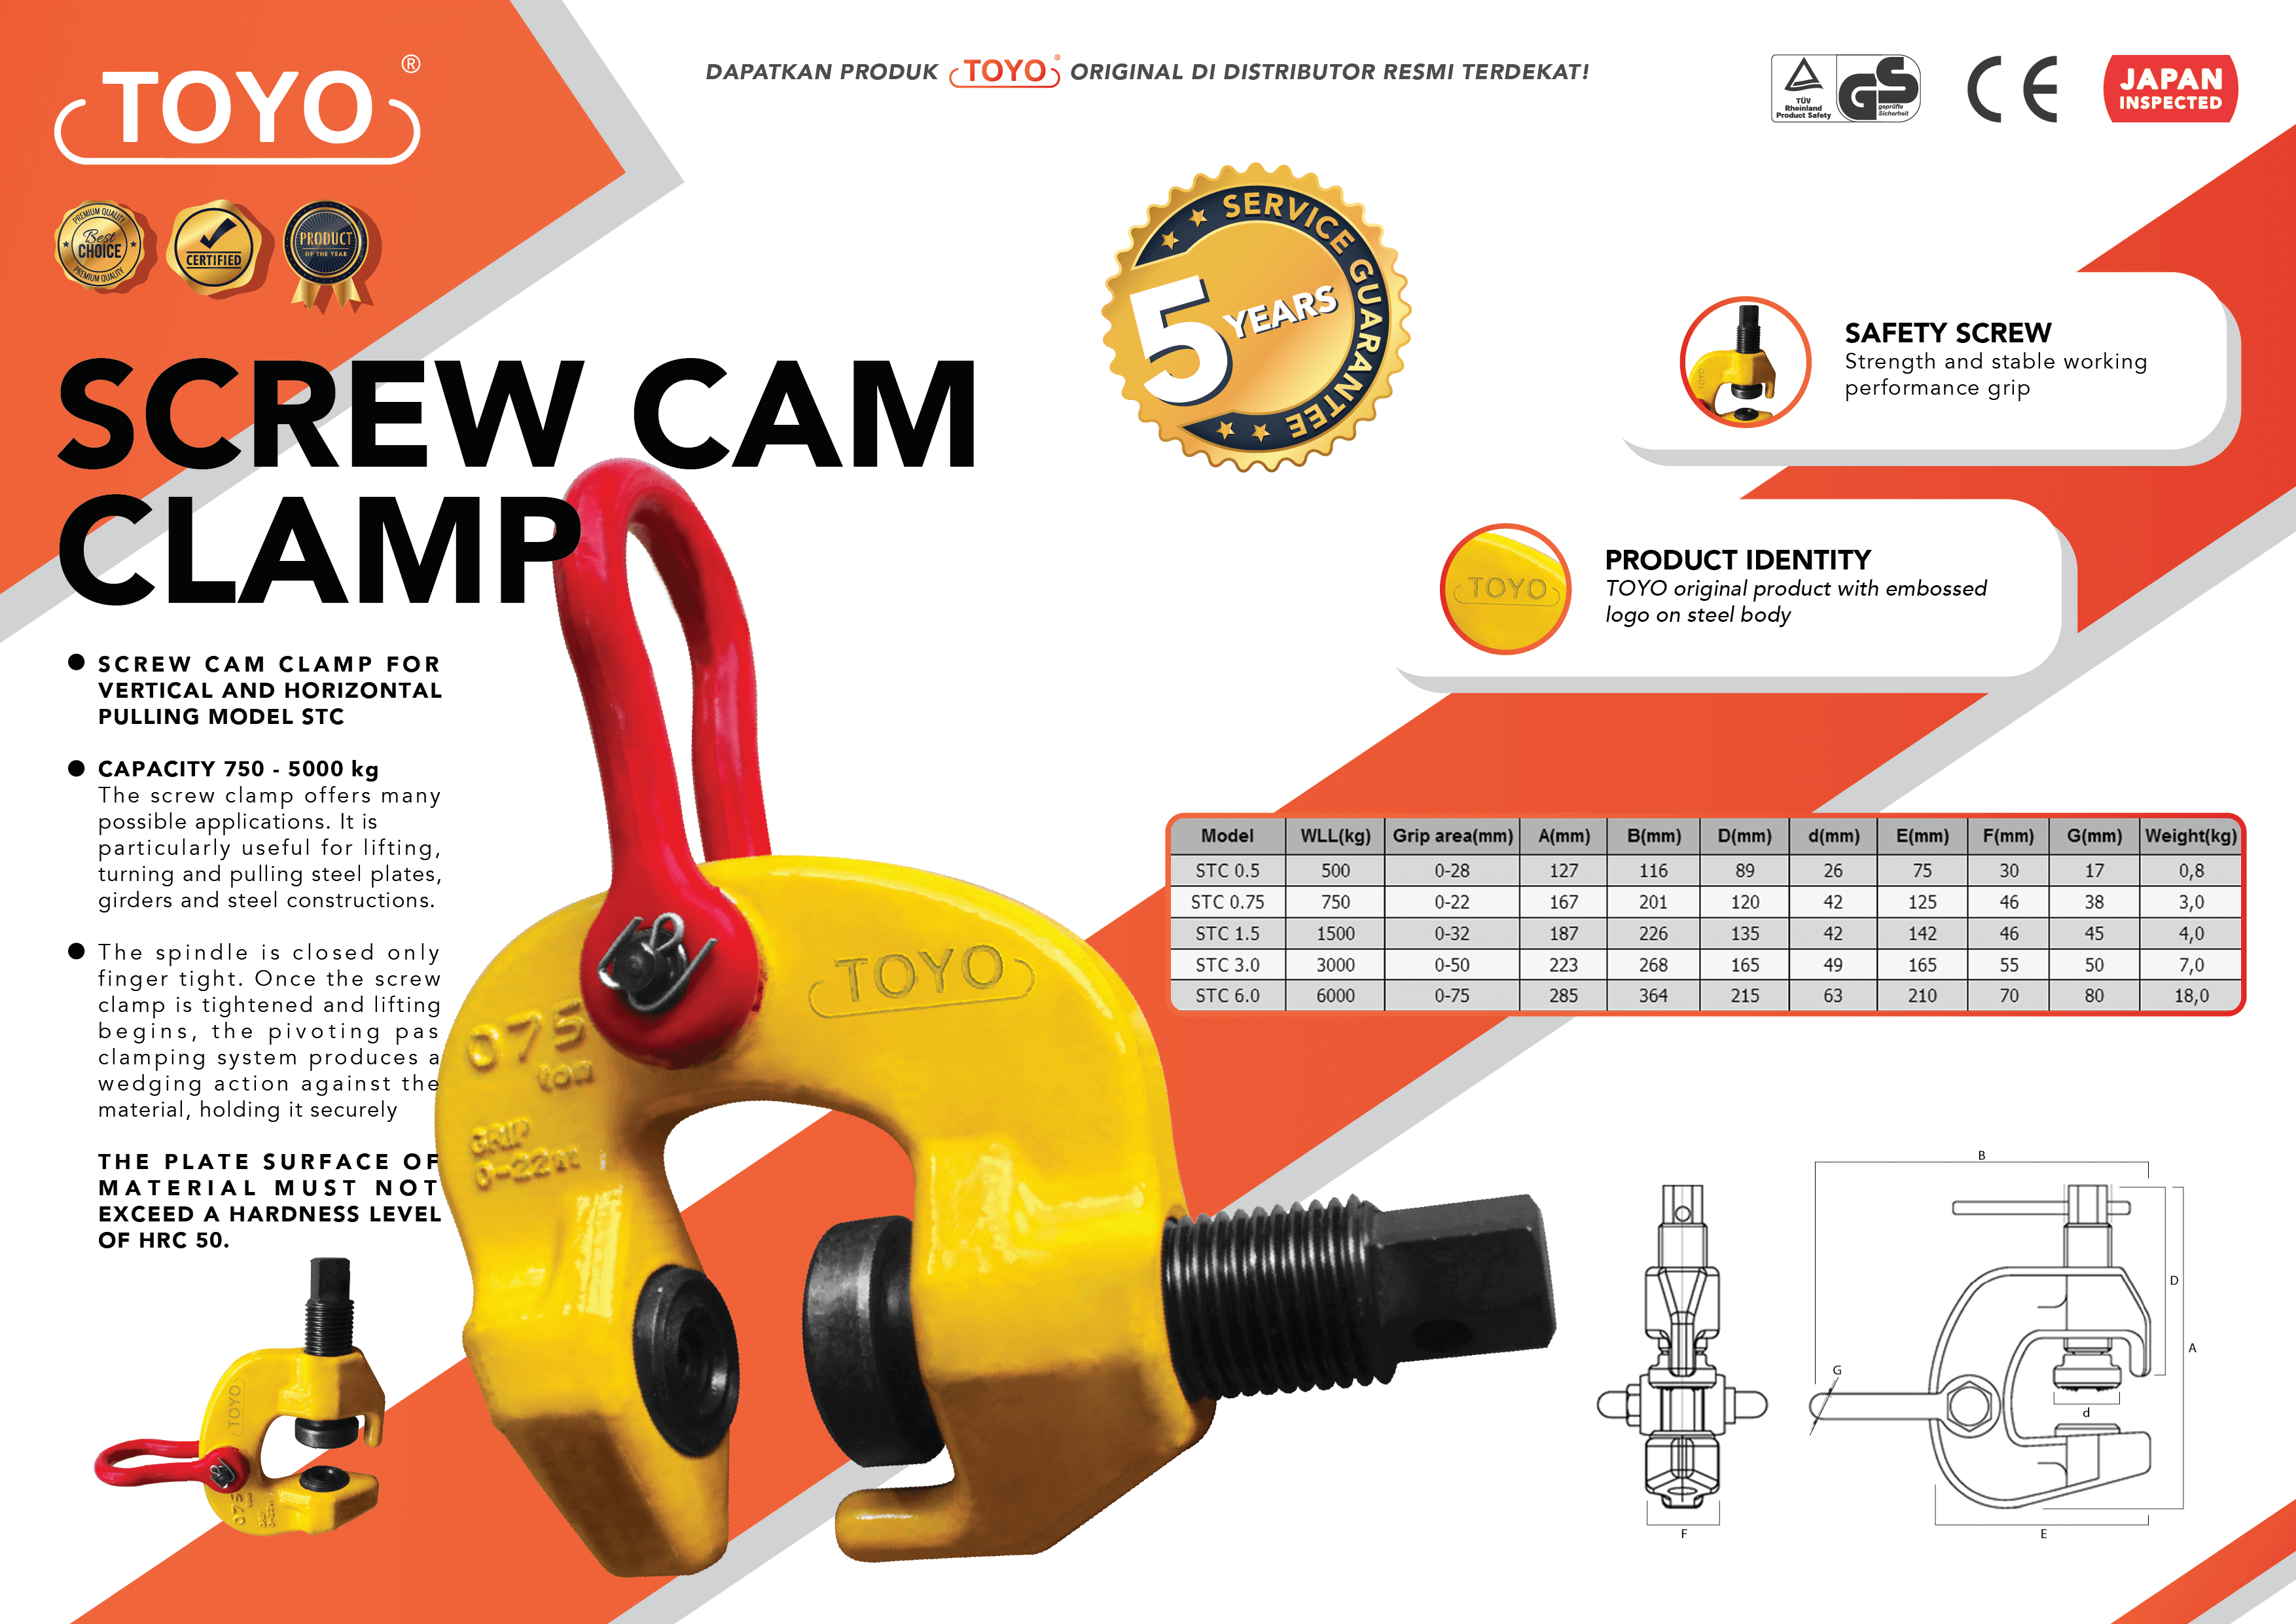 Spesifikasi Detail Screw Cam Clamp Toyo Original